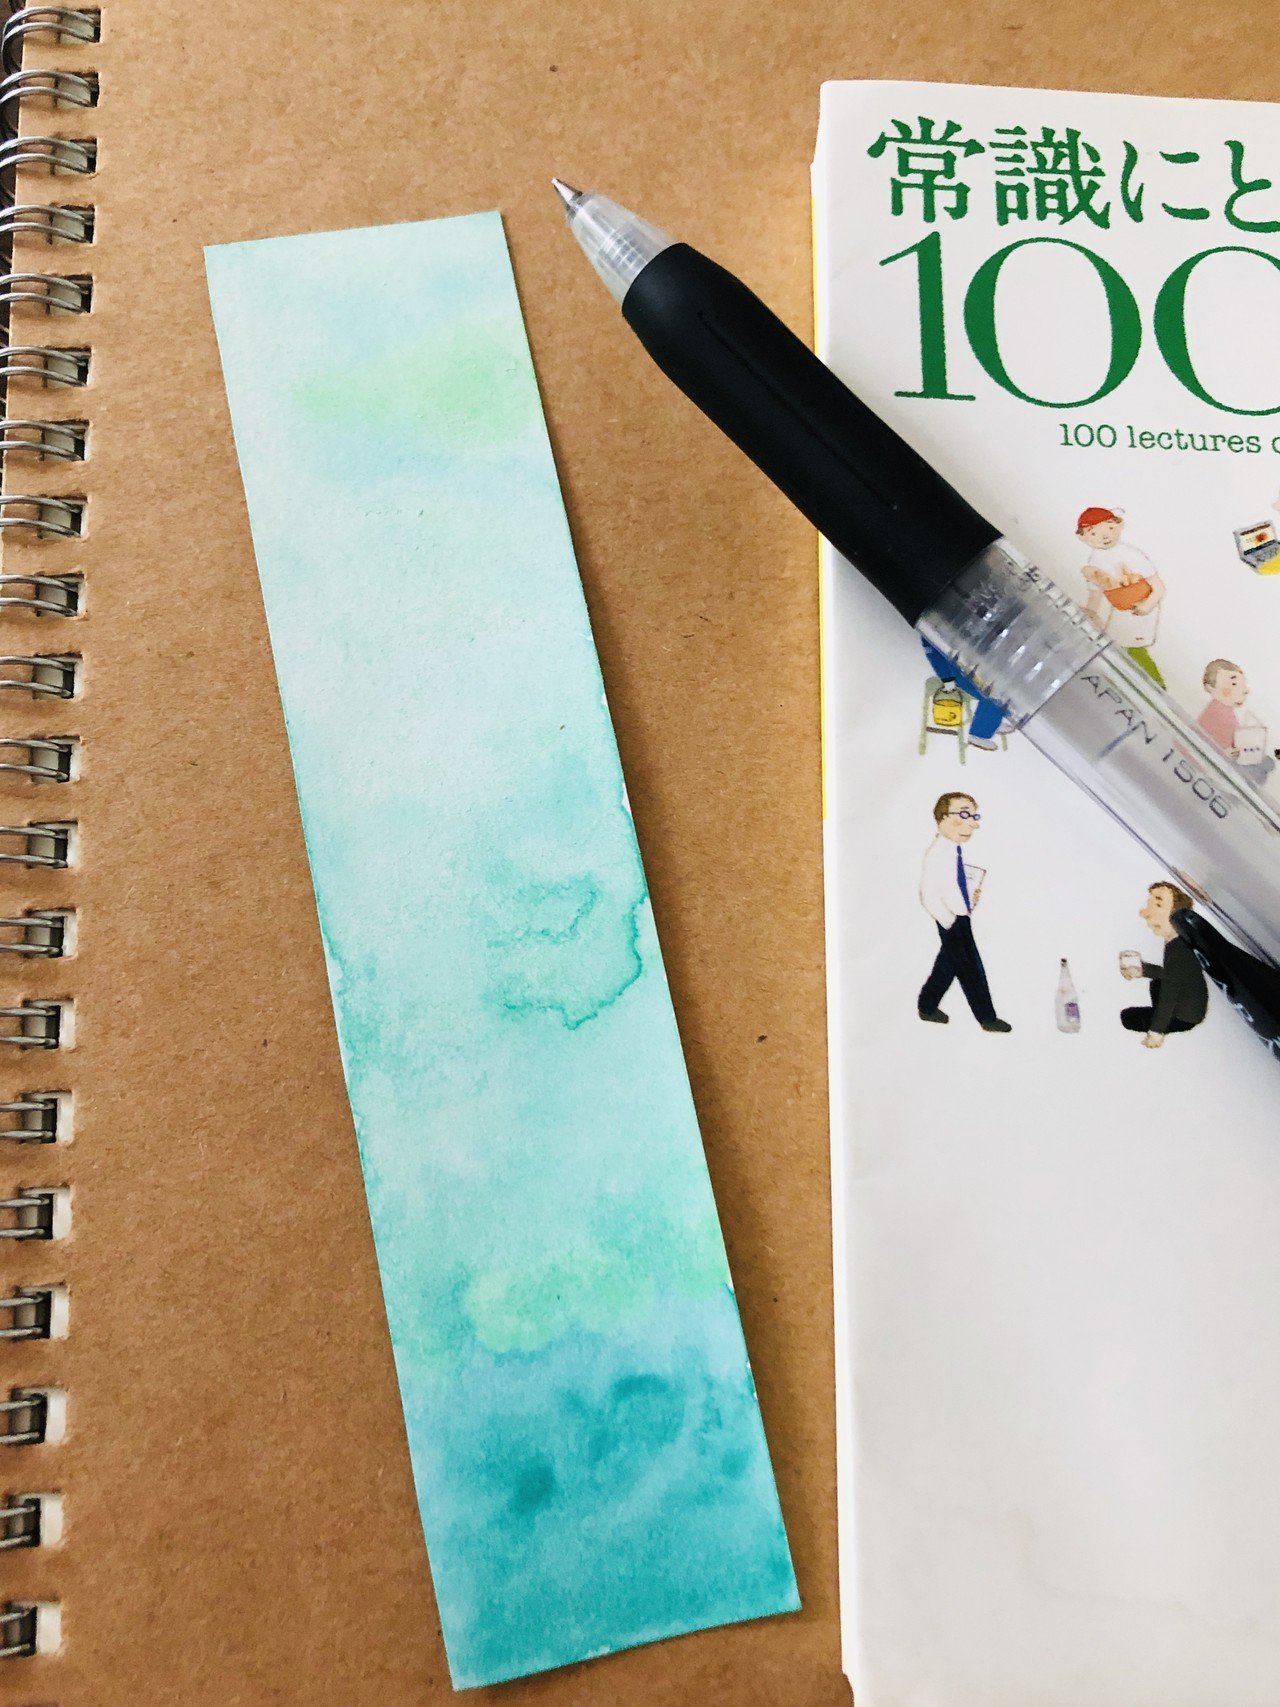 手作りしおり カラーセラピーで 心を穏やかにする 効果があると言われているグリーンをベースに描きました 色にも意味や効果があって面白いです このしおり は 読書家の母へのプレゼントとなりました 綺麗 一藤木 朝陽 Note